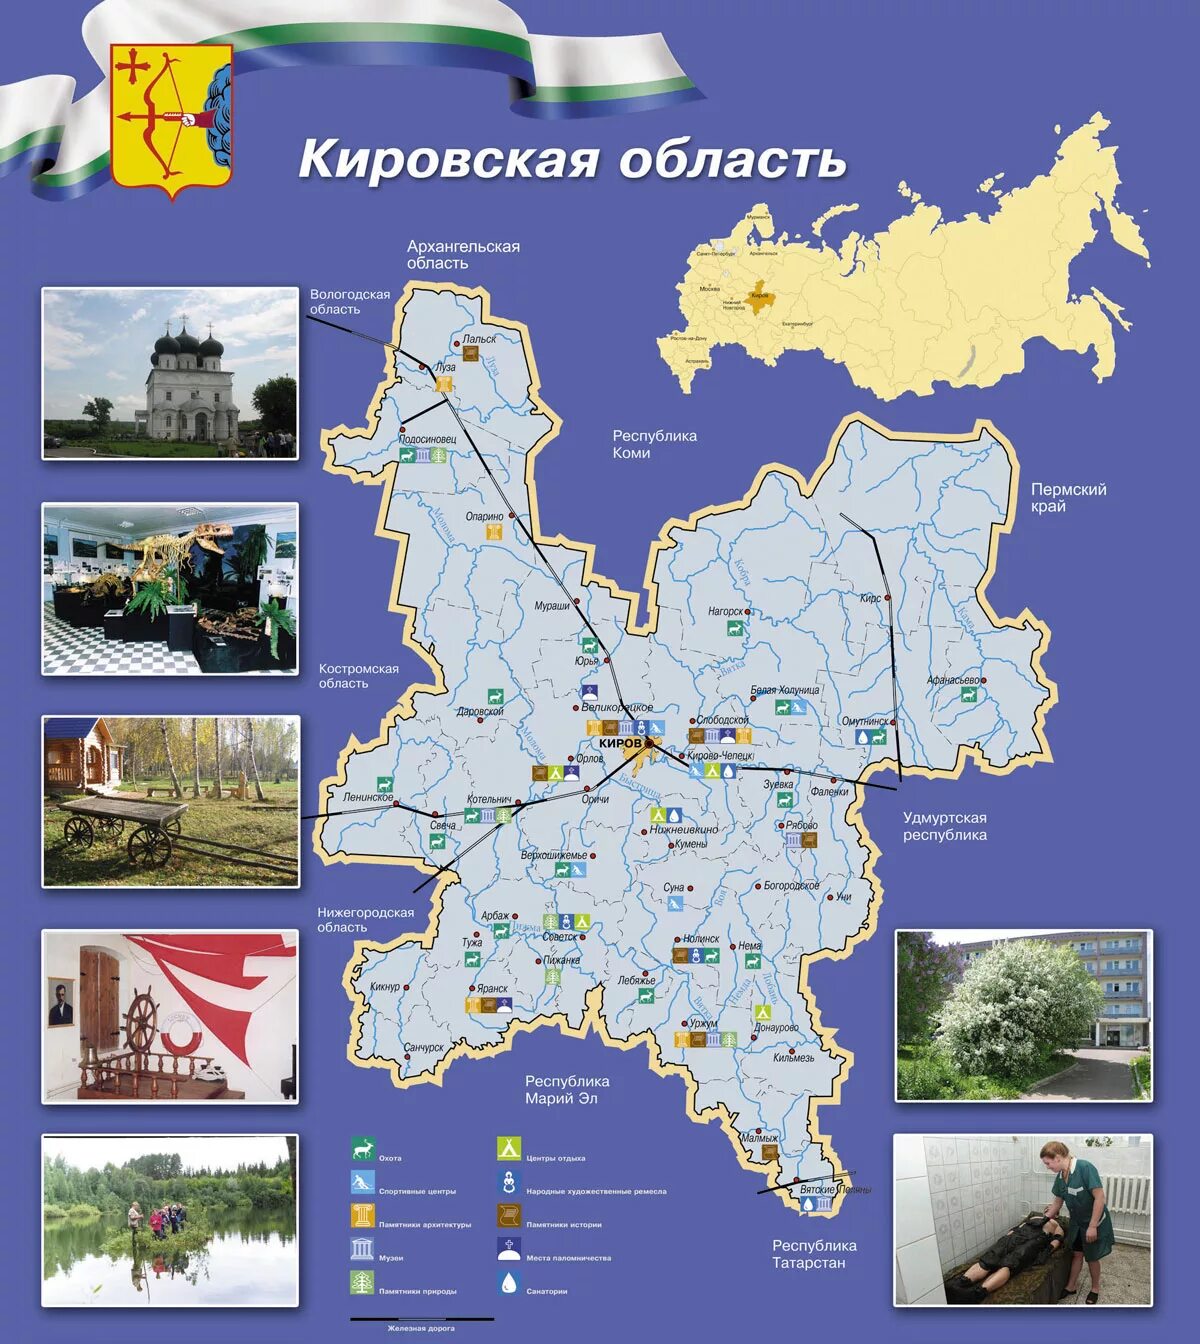 Кировская область страна